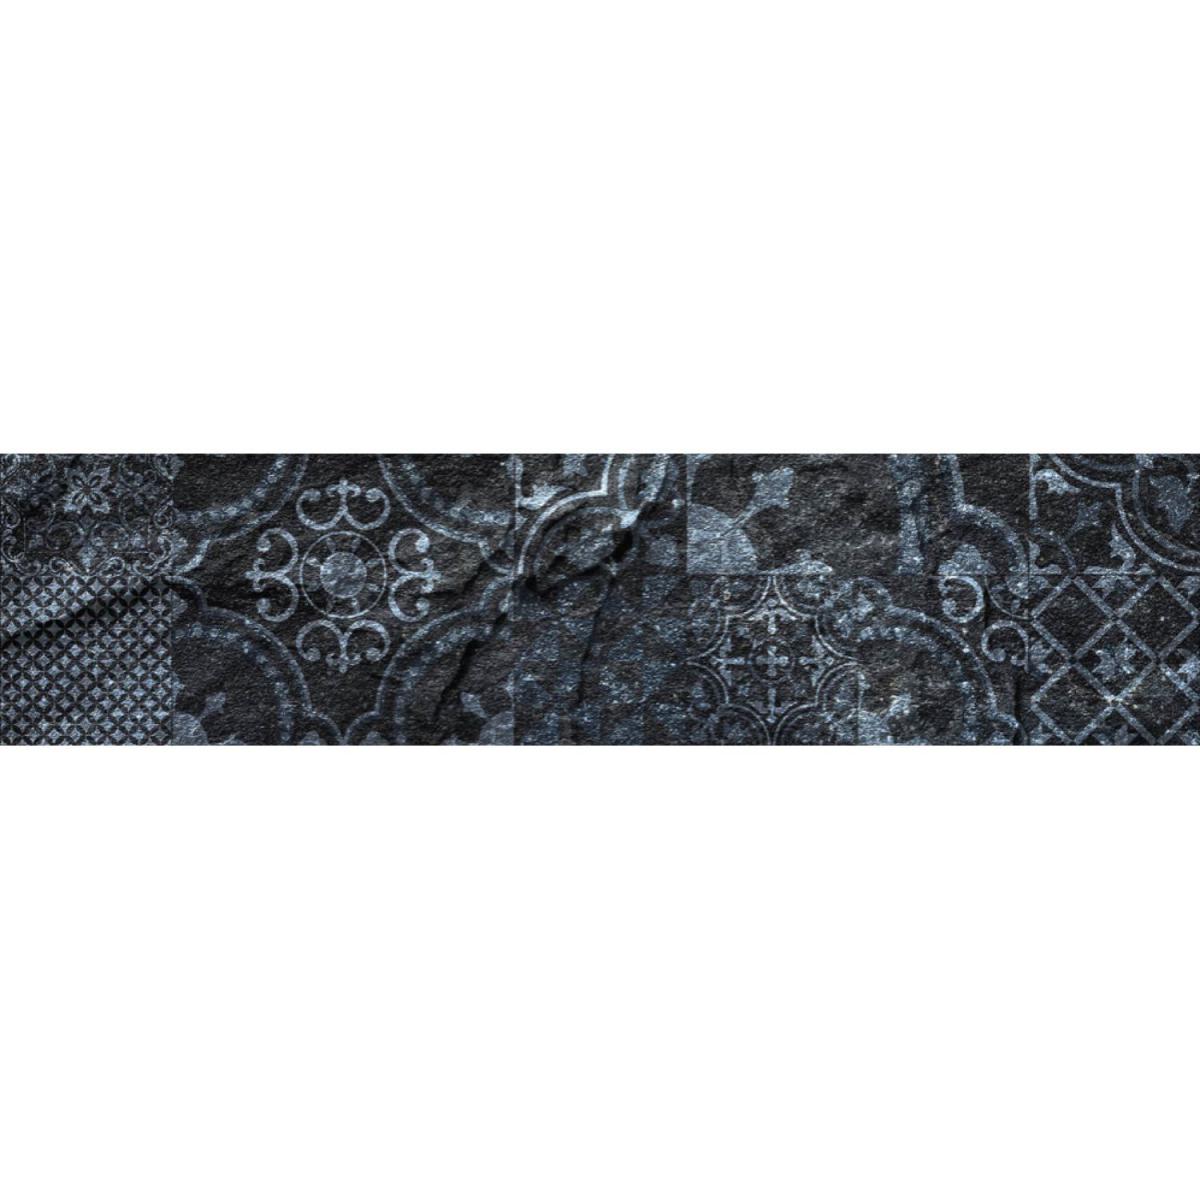 Cpm - Crédence adhésive en alu imitation Ardoise - L. 20 x l. 90 cm - Noir - Fond de hotte